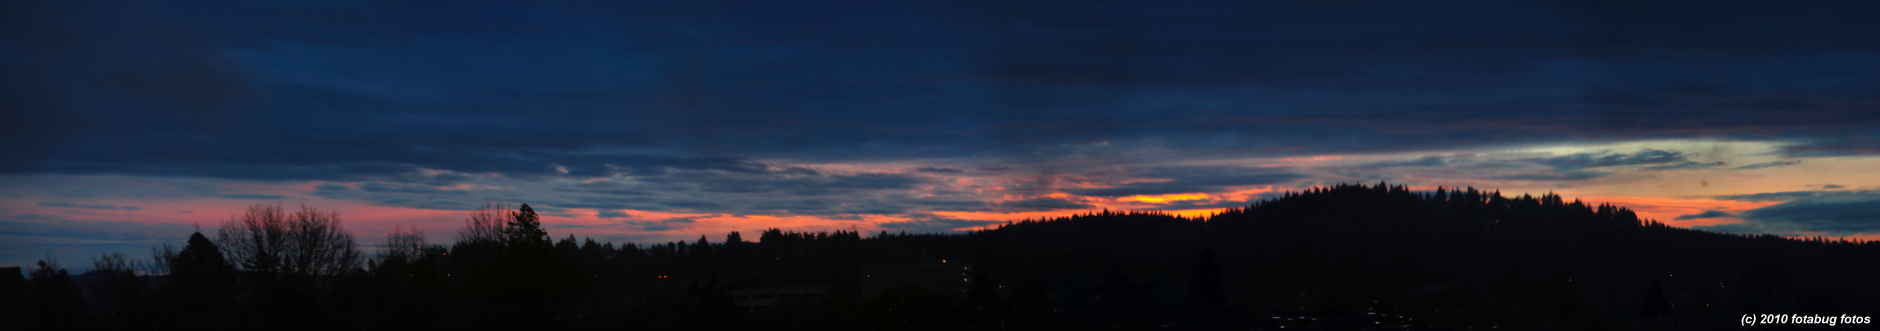 Morning sky - Eugene 010310